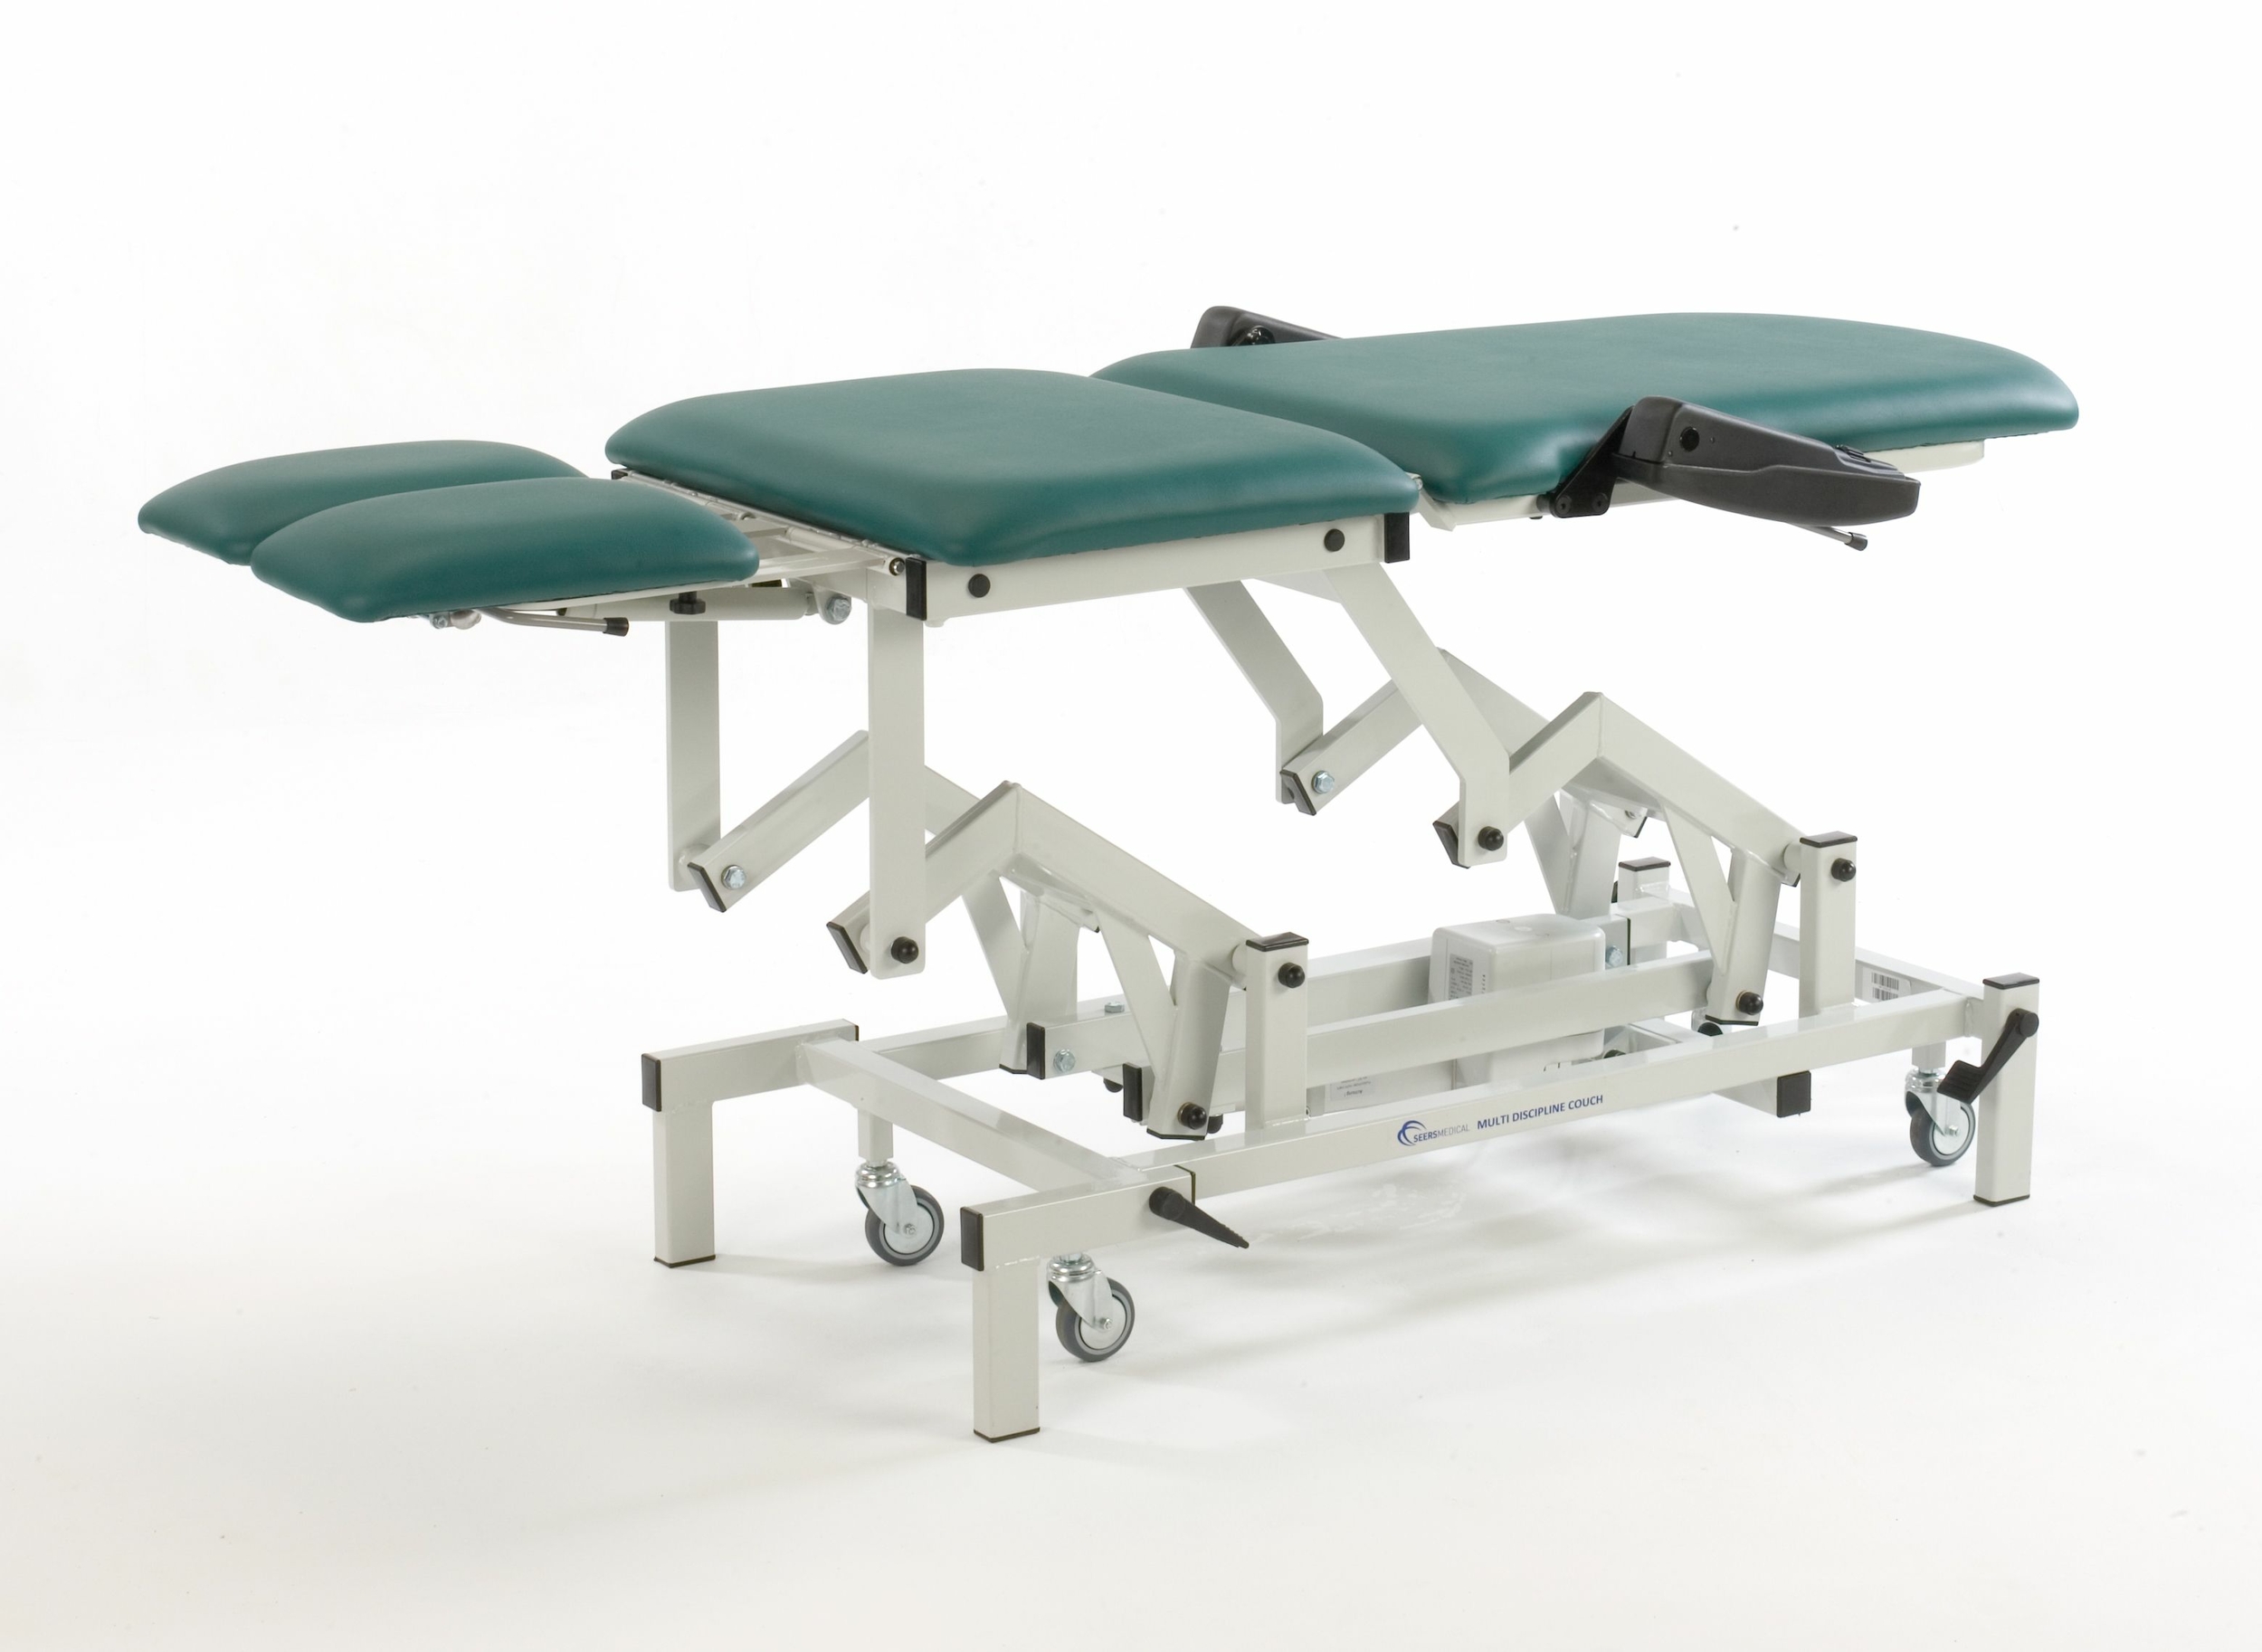 seers medical fauteuil de podologie électrique SM0575 vert tablelya version allongé